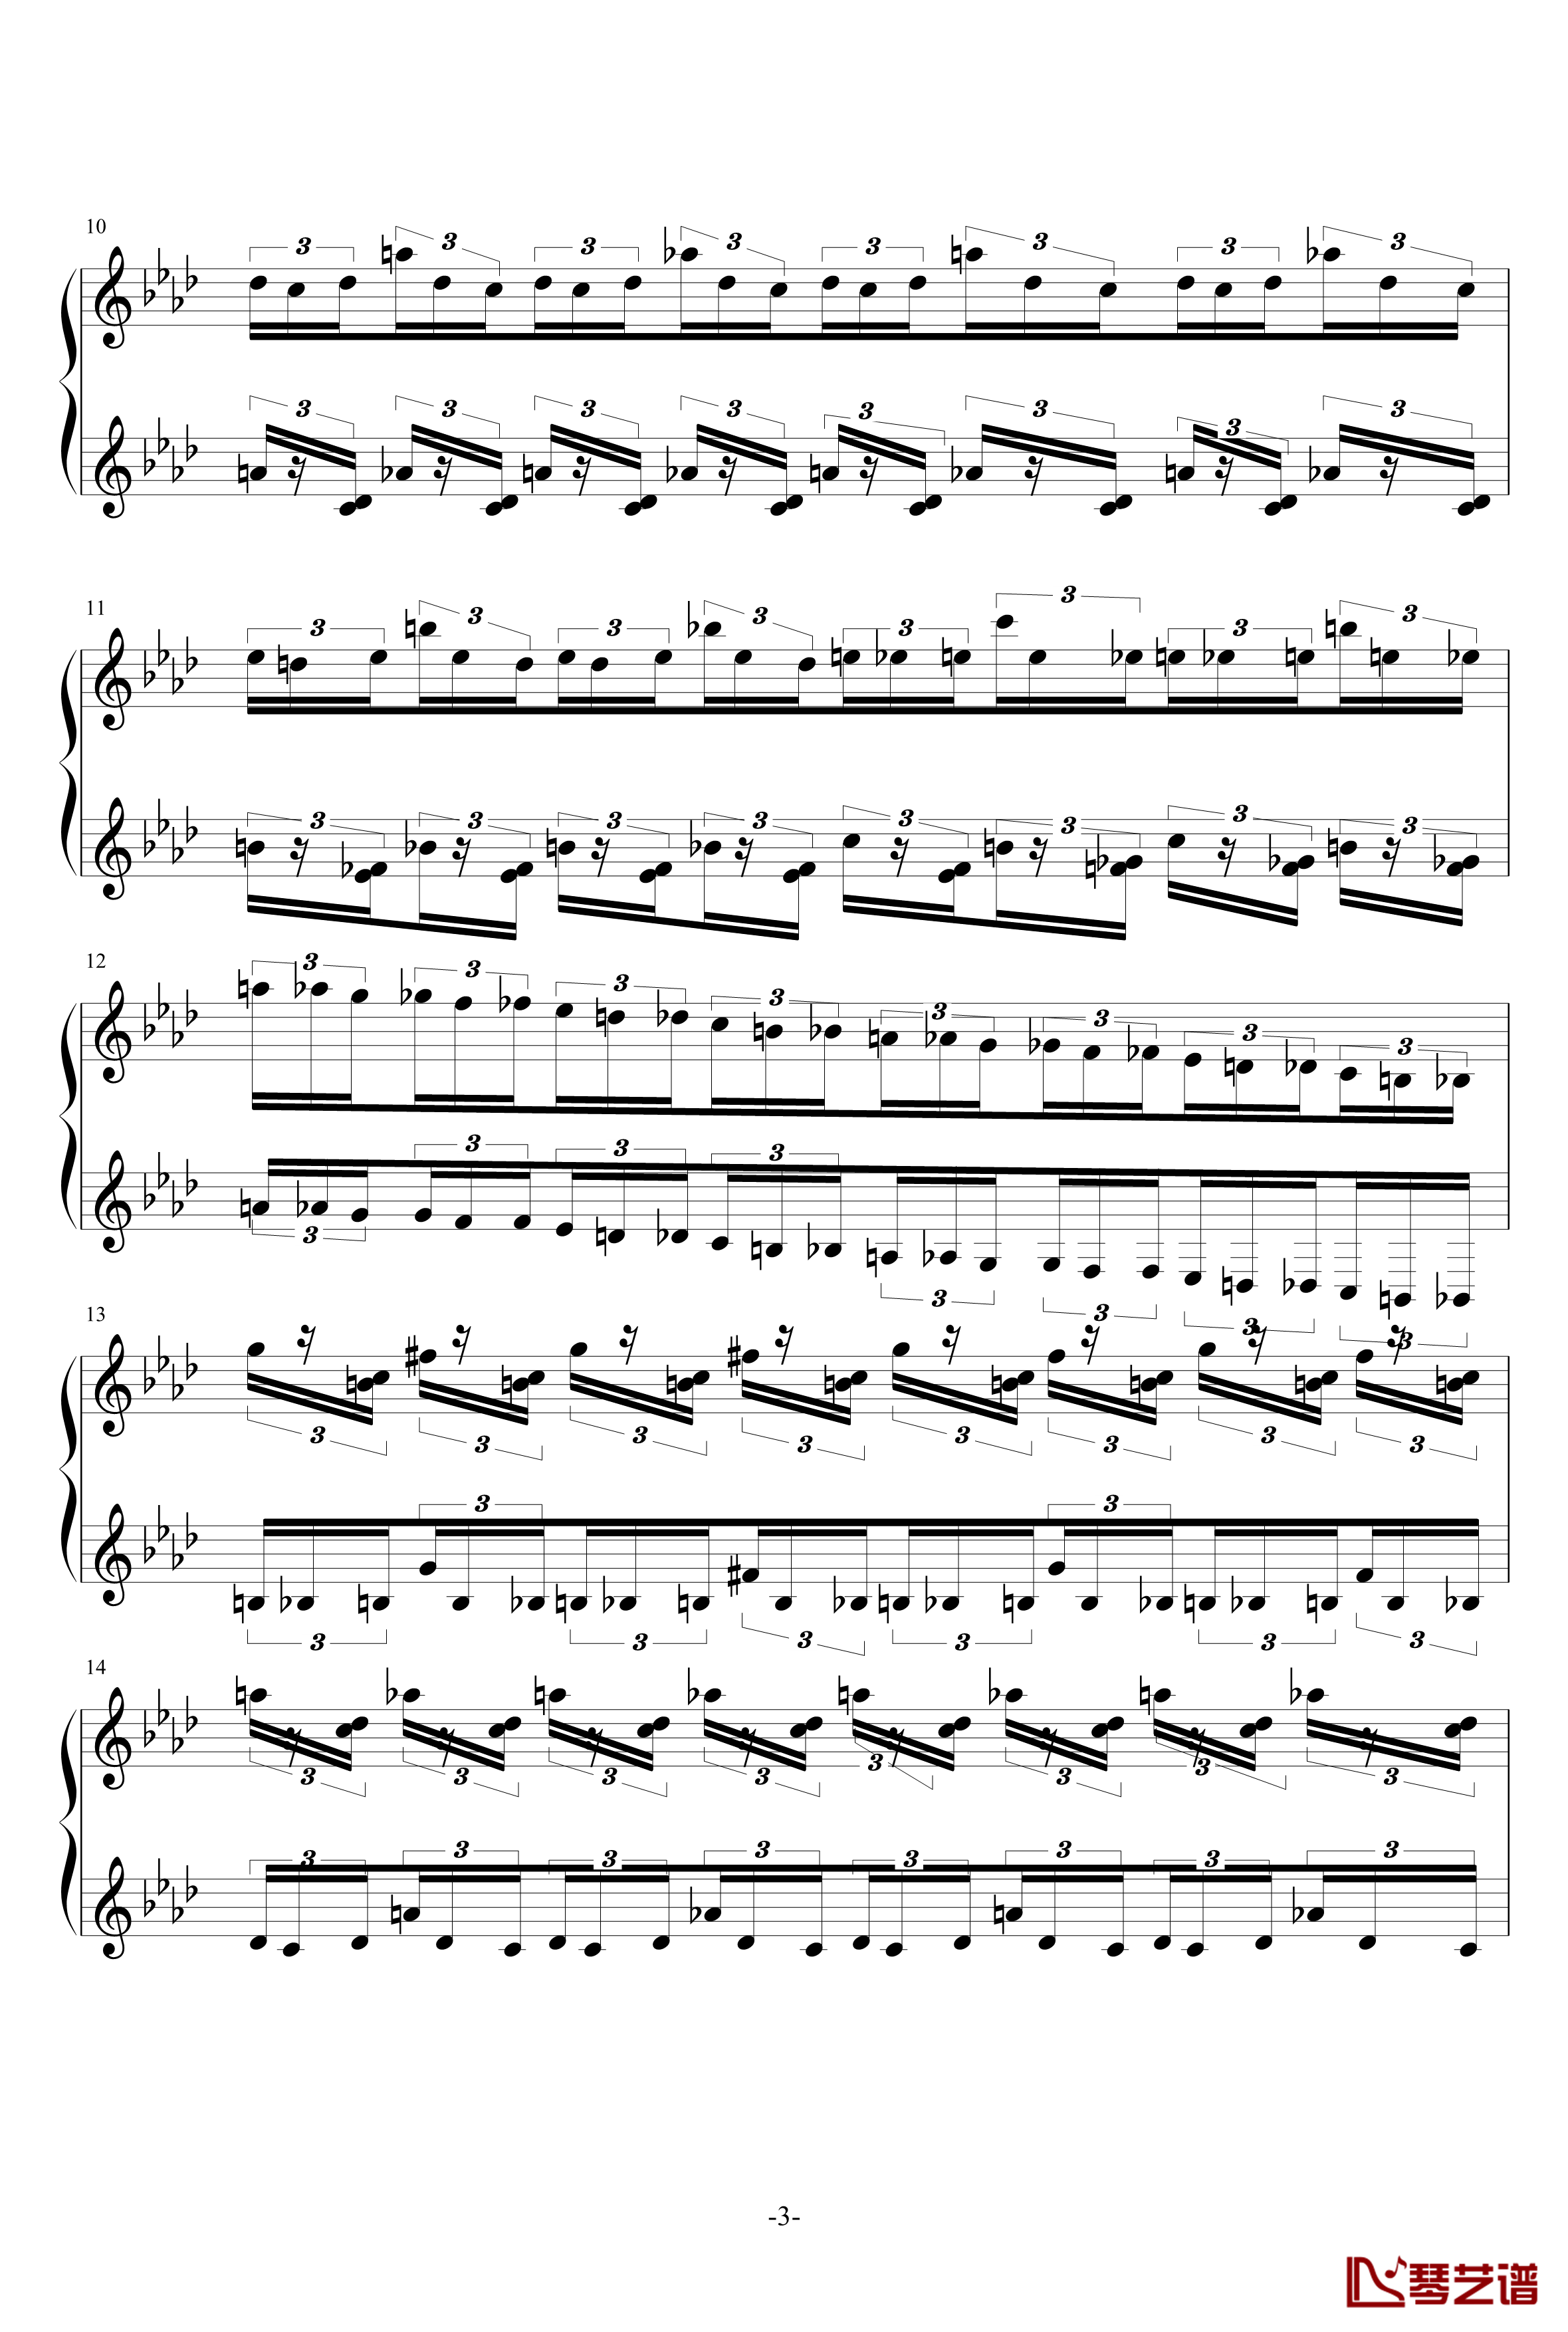 半音阶神经病练习曲钢琴谱-FangDong3